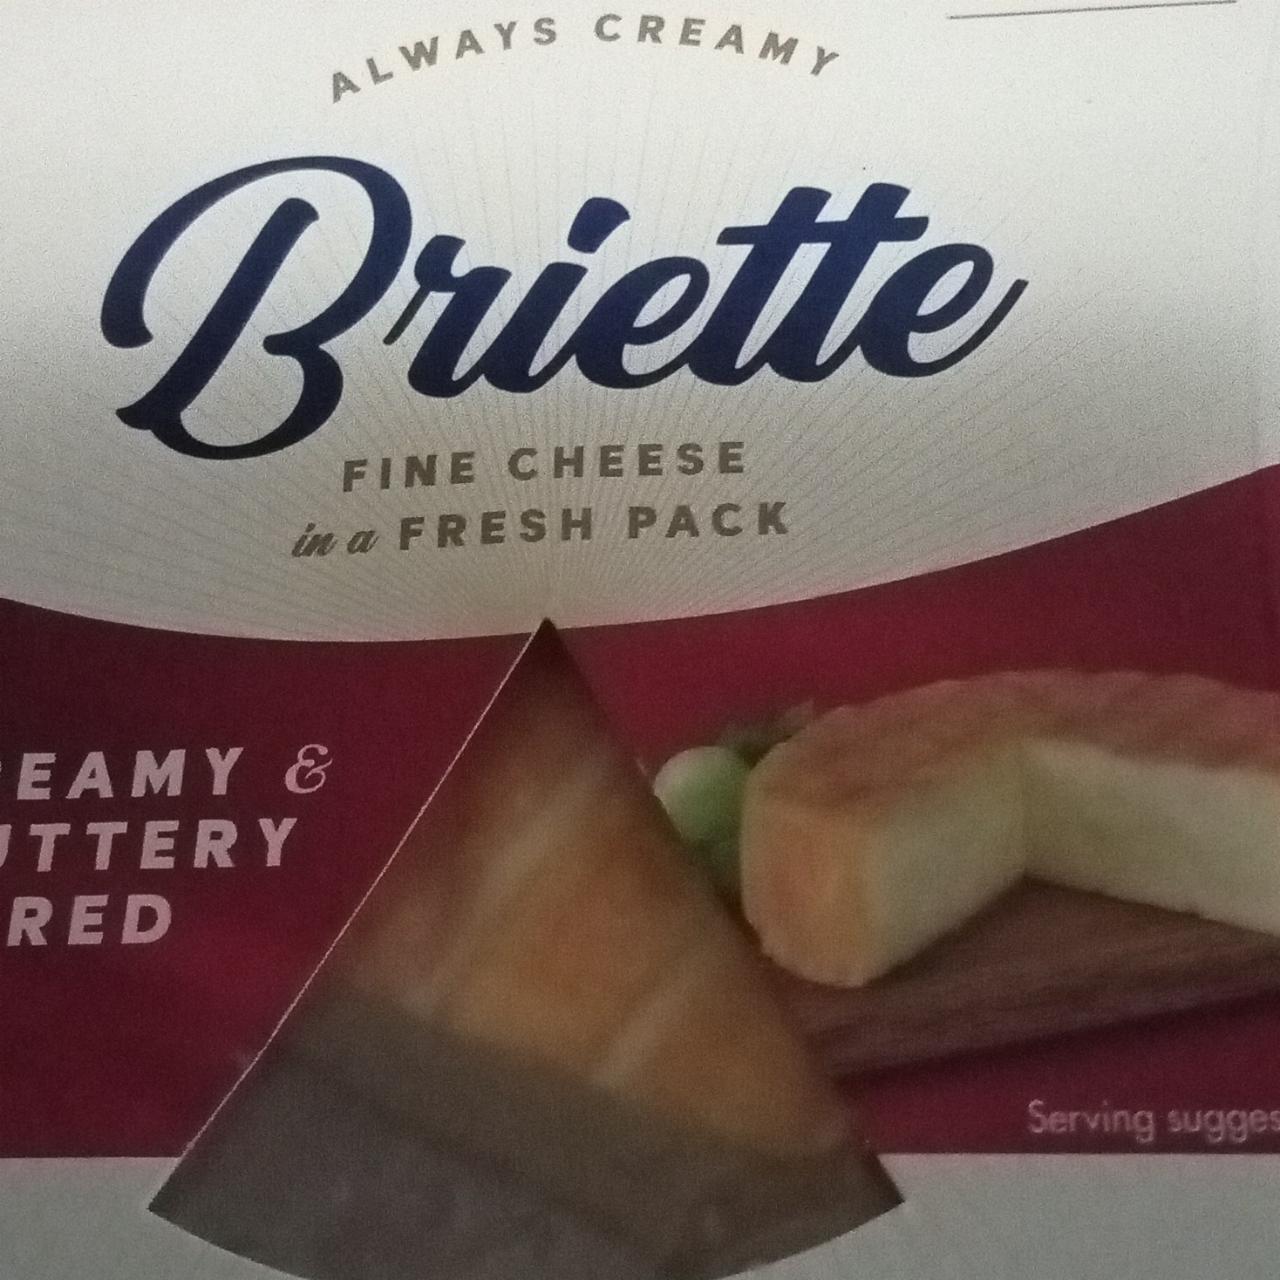 Fotografie - Fine cheese creamy & buttery red Briette